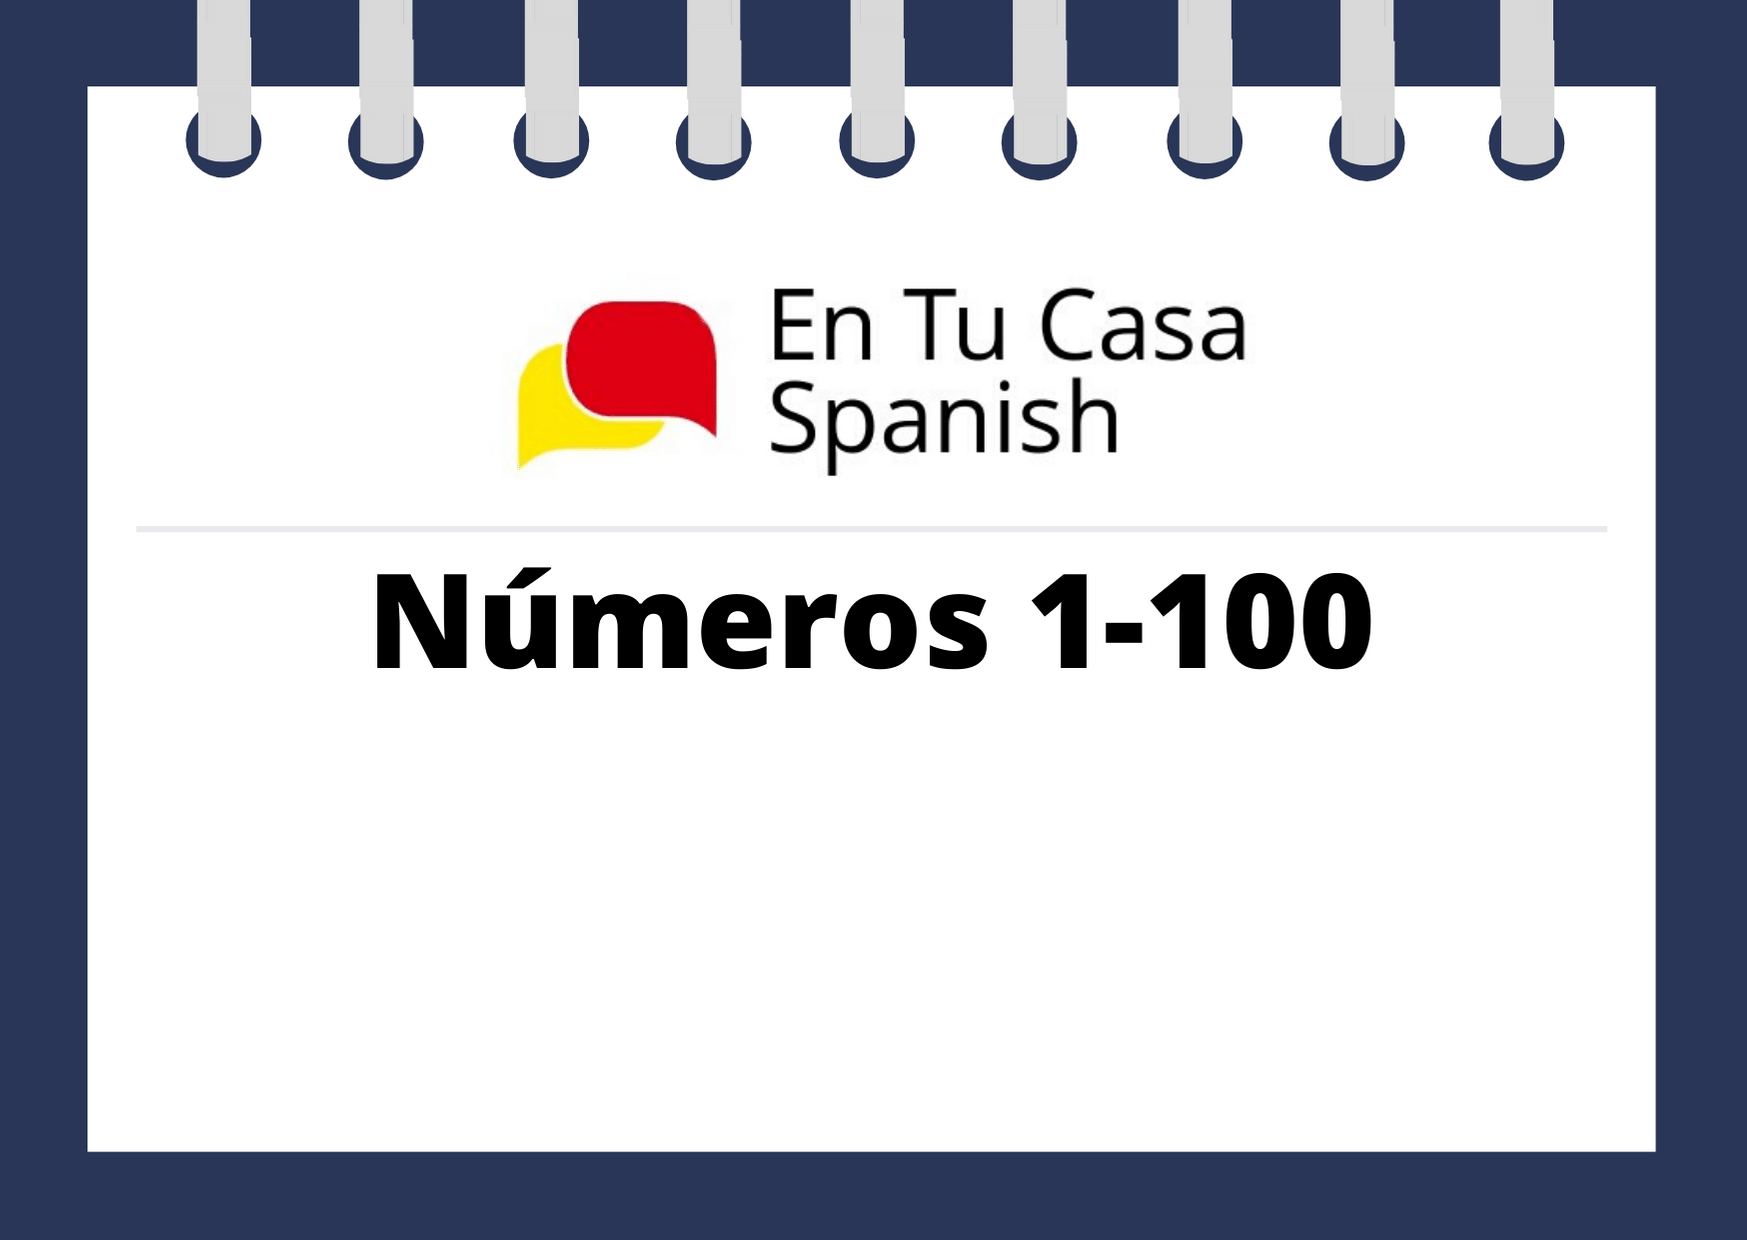 spanish-numbers-1-100-part-ii-en-tu-casa-spanish